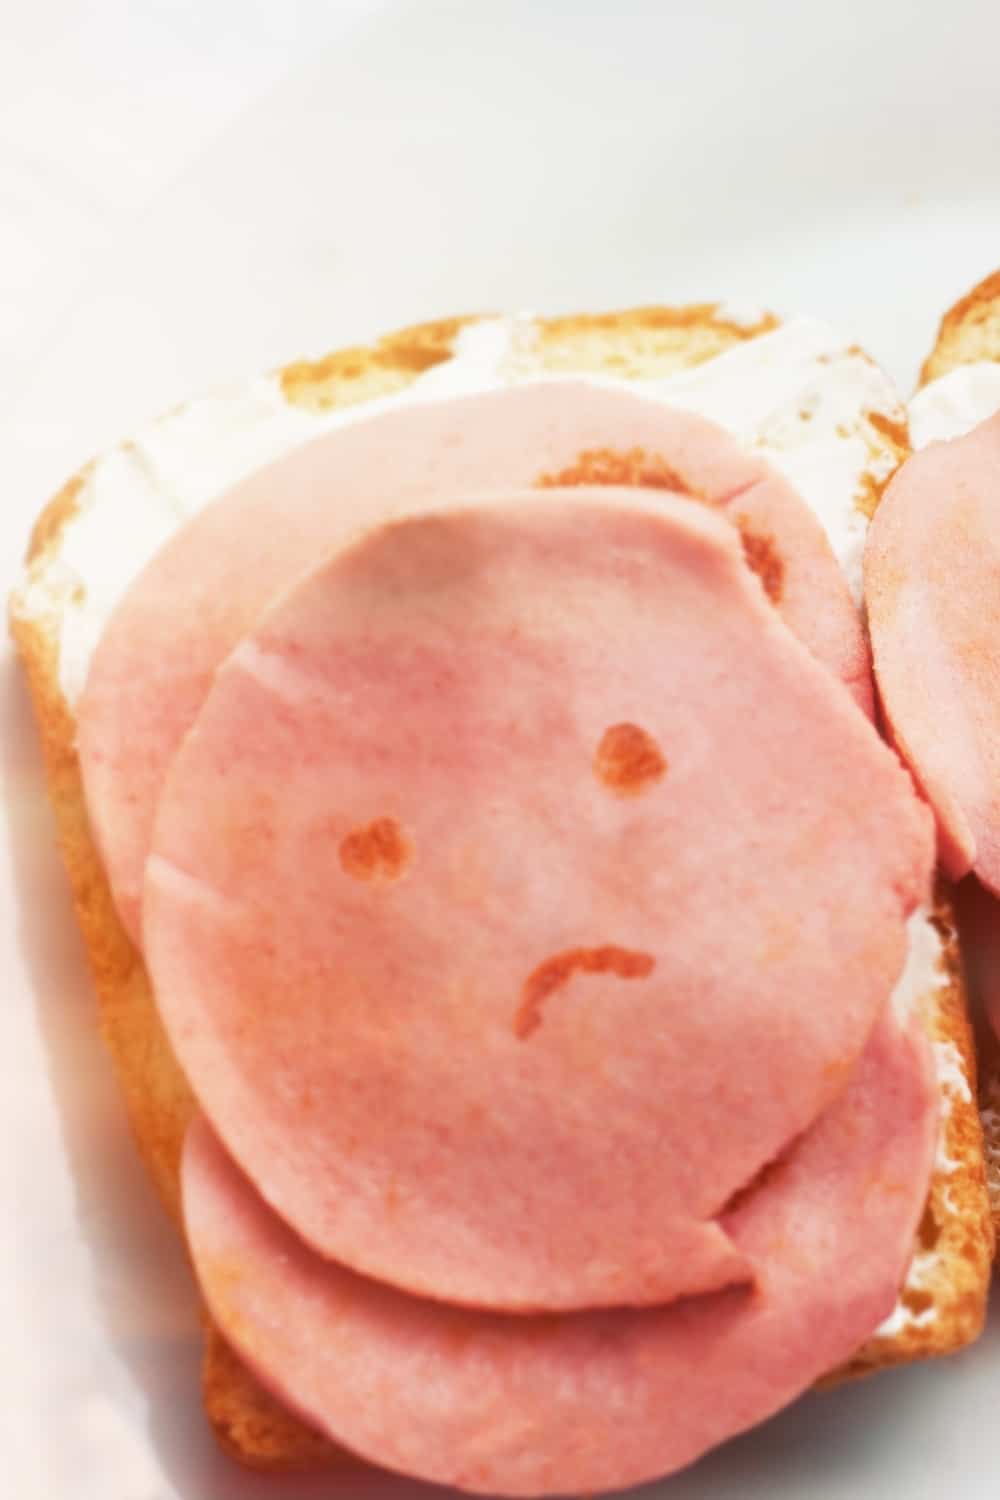 verdorbenes Mittagsfleisch, trauriges Smiley-Gesicht